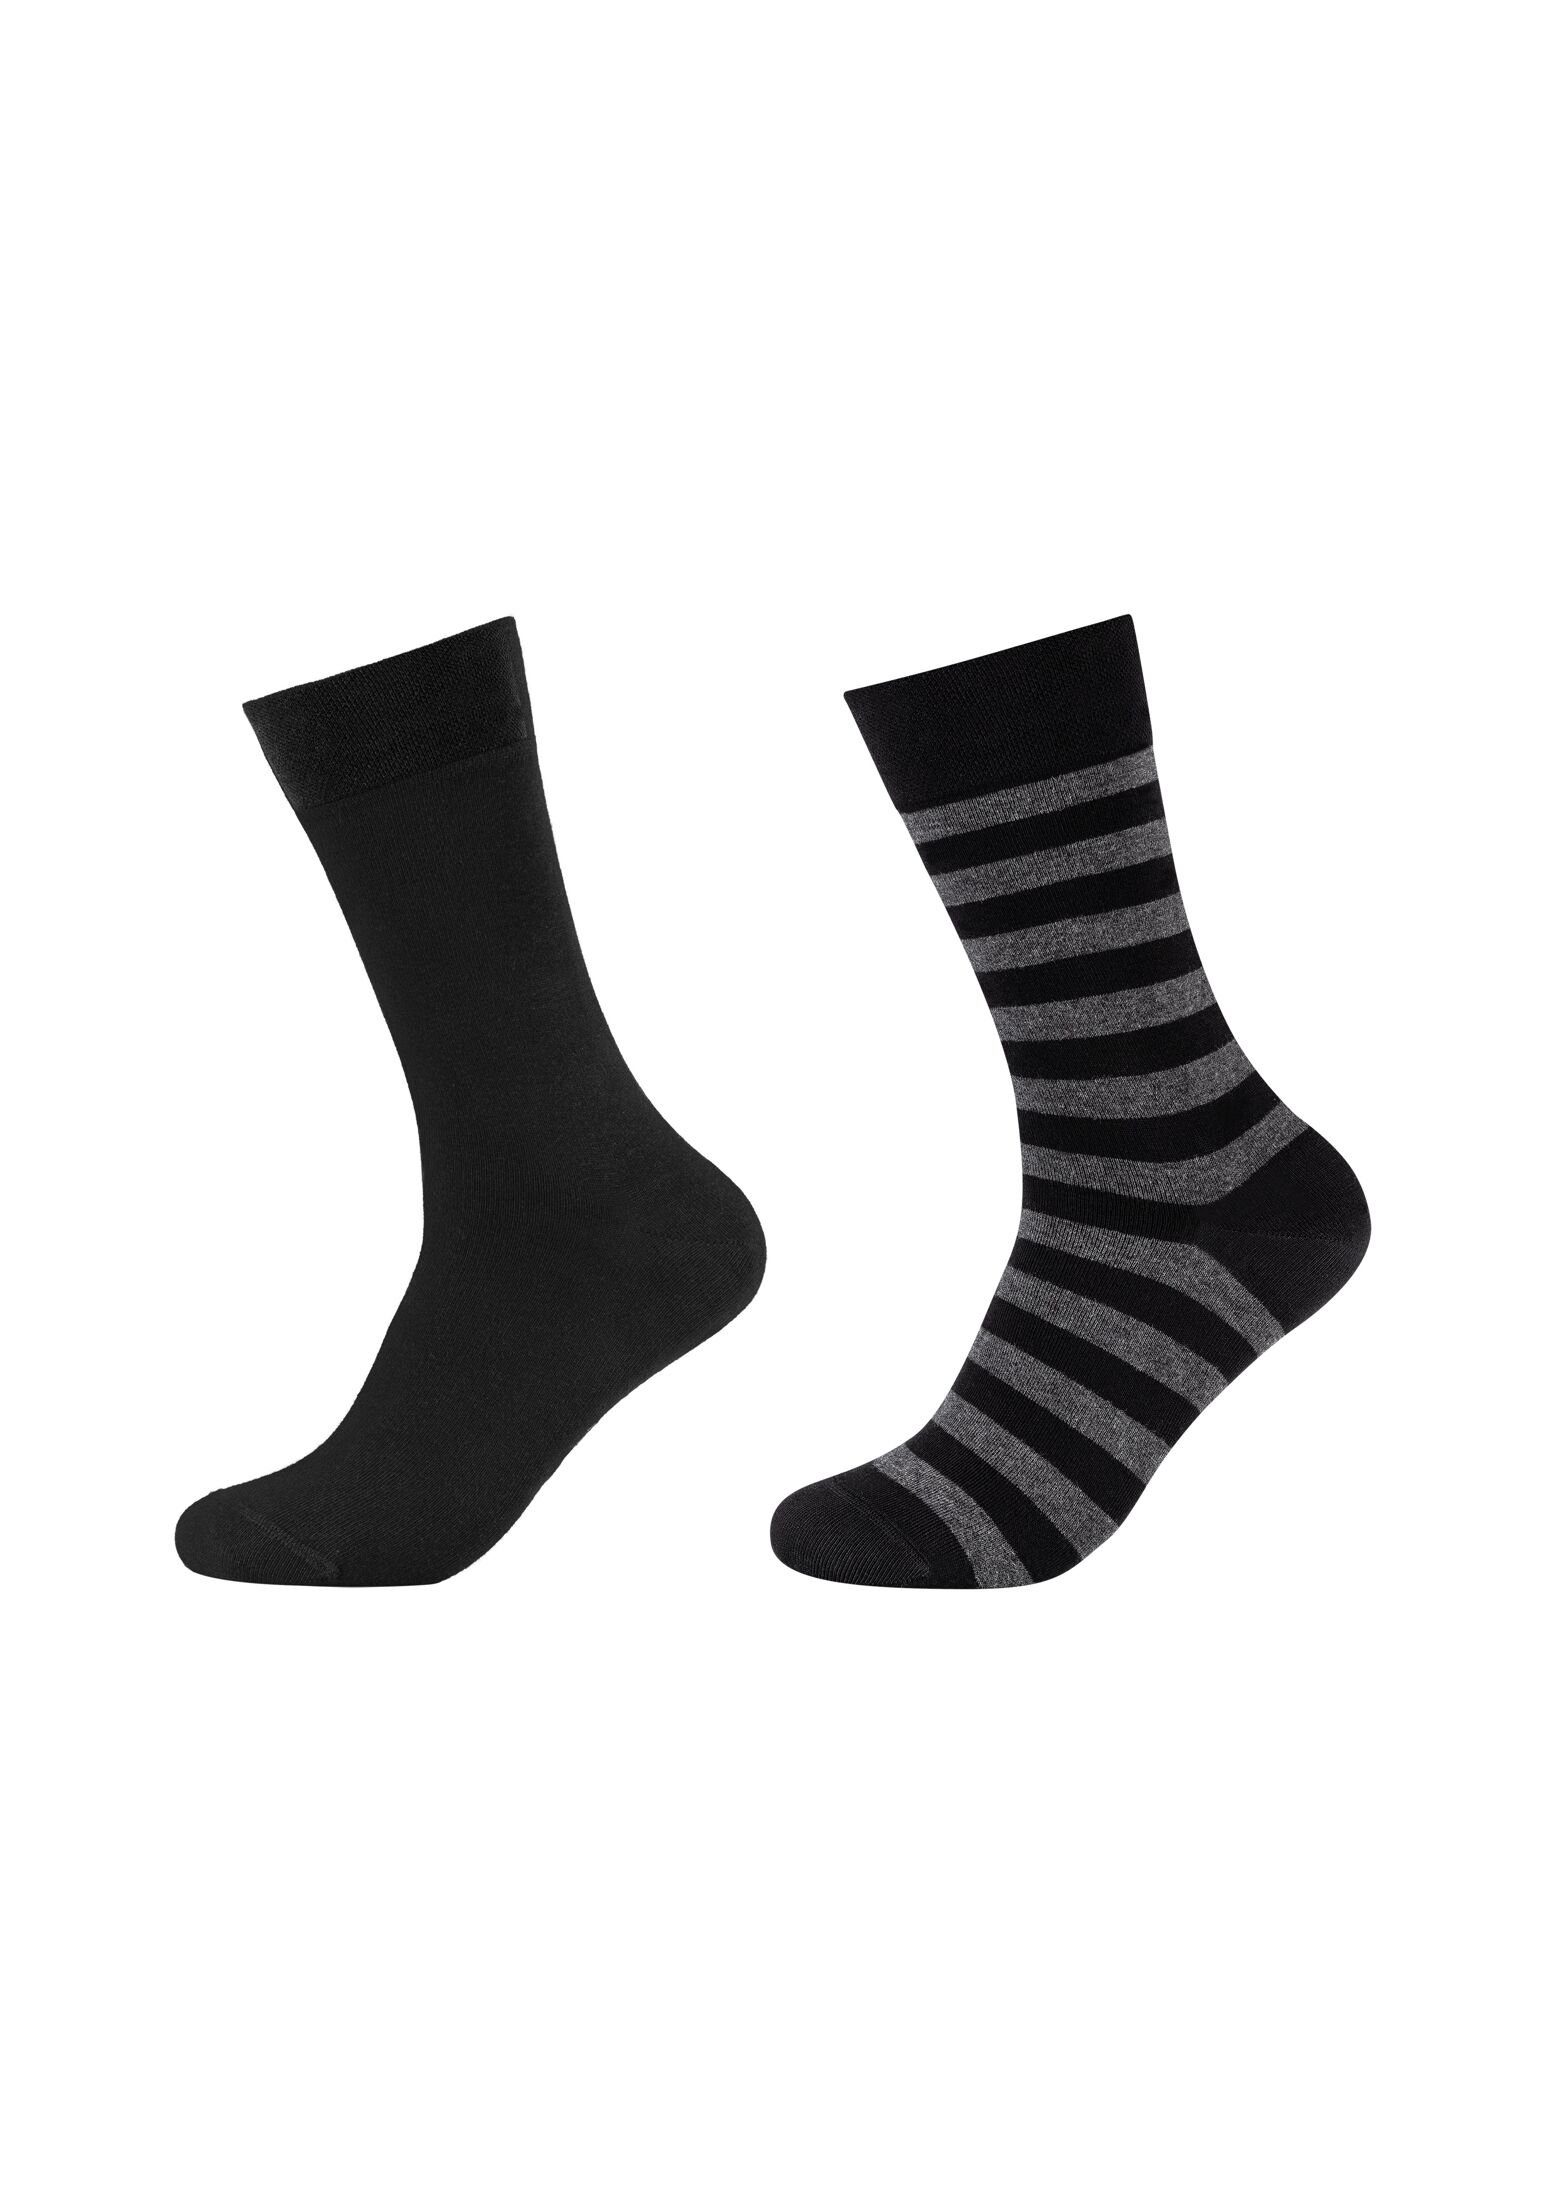 Camano black Pack 4er Socken Socken